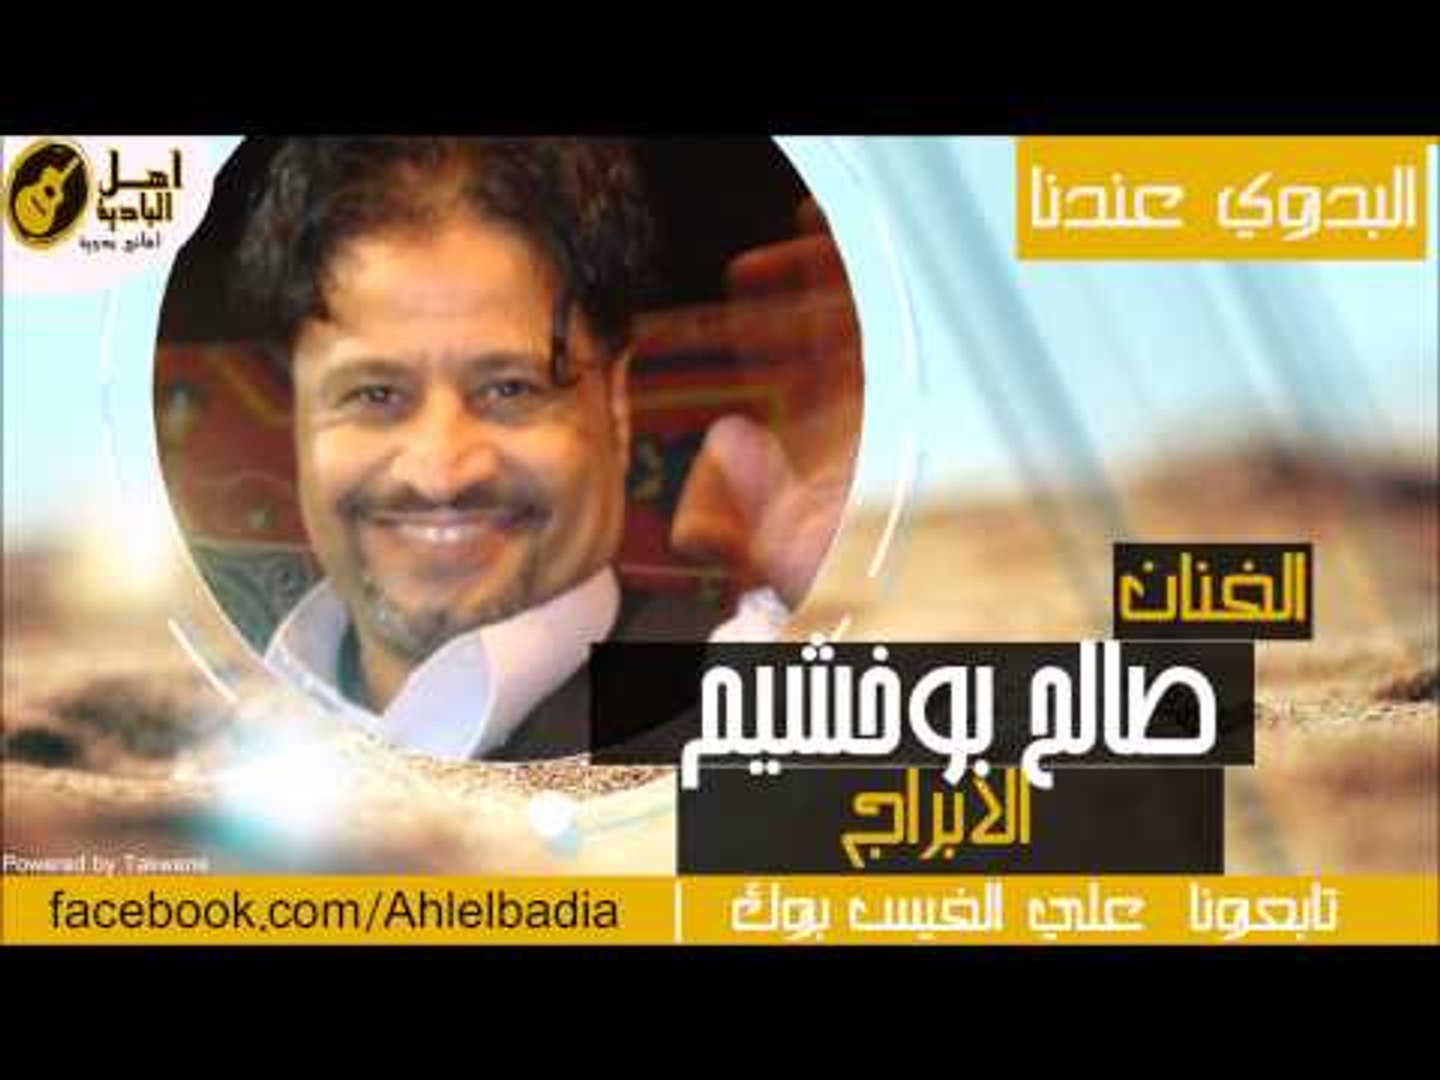 صالح بوخشيم - الابراج - video Dailymotion